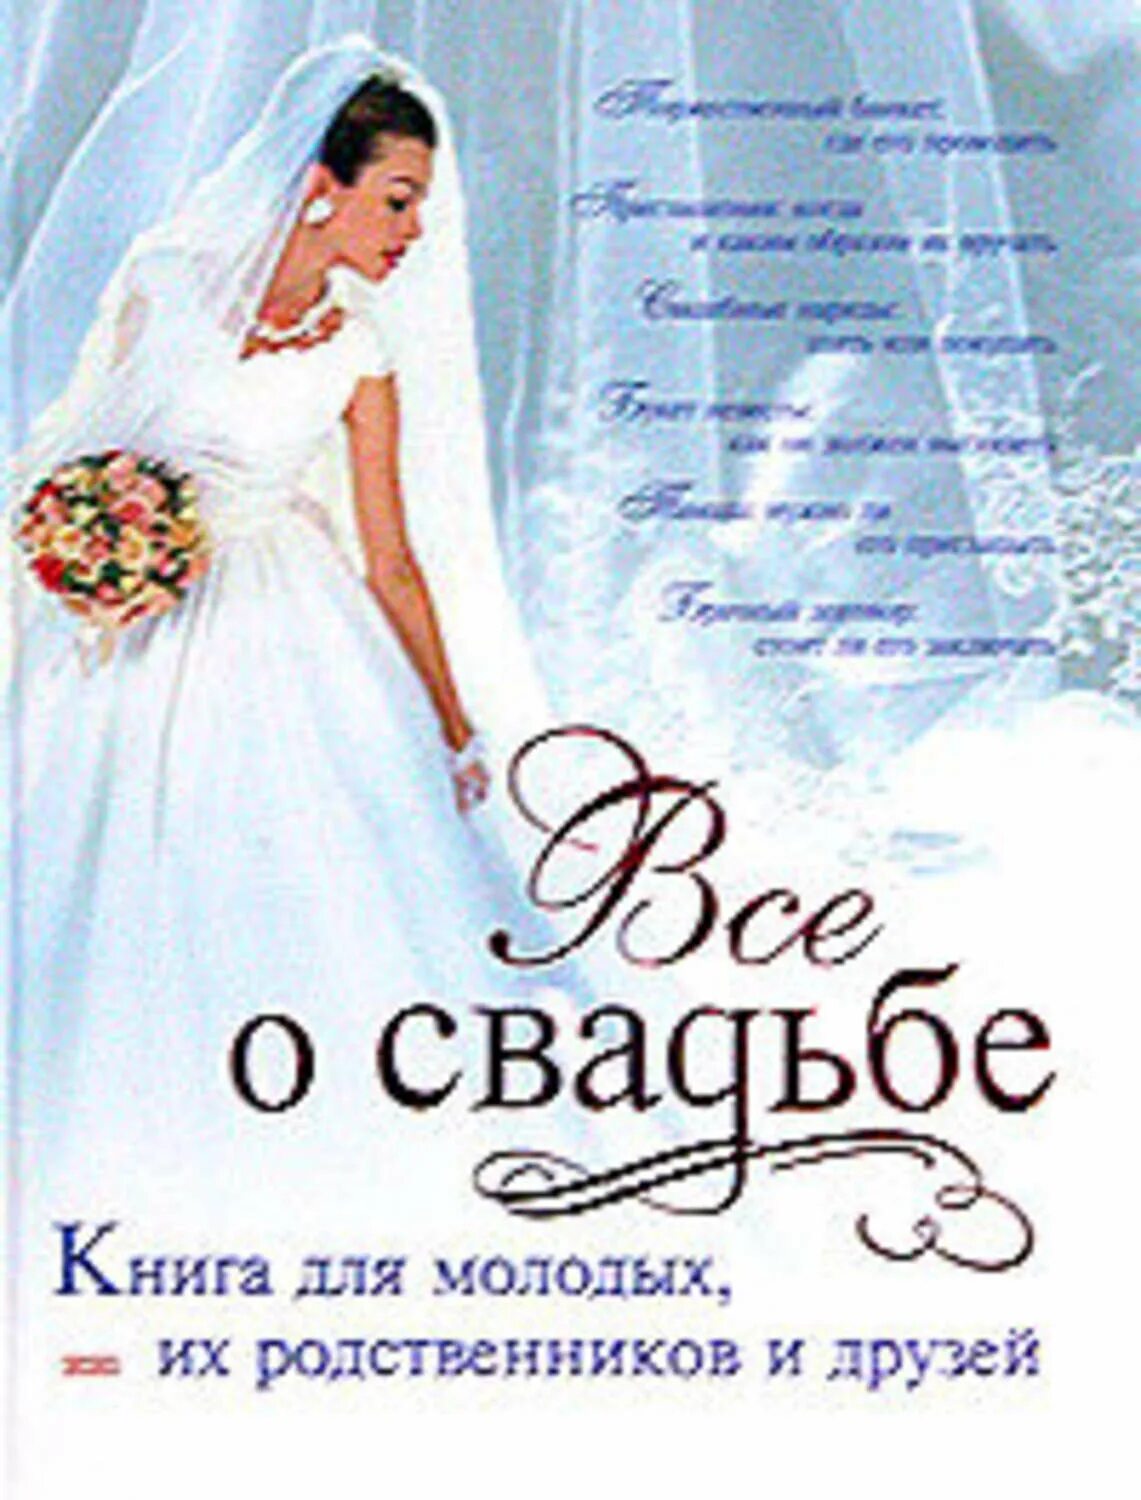 Читать книгу свадьбе быть. Книга для молодых. Книги про свадьбу. Книга все о свадьбе. Книги для молодых девушек.